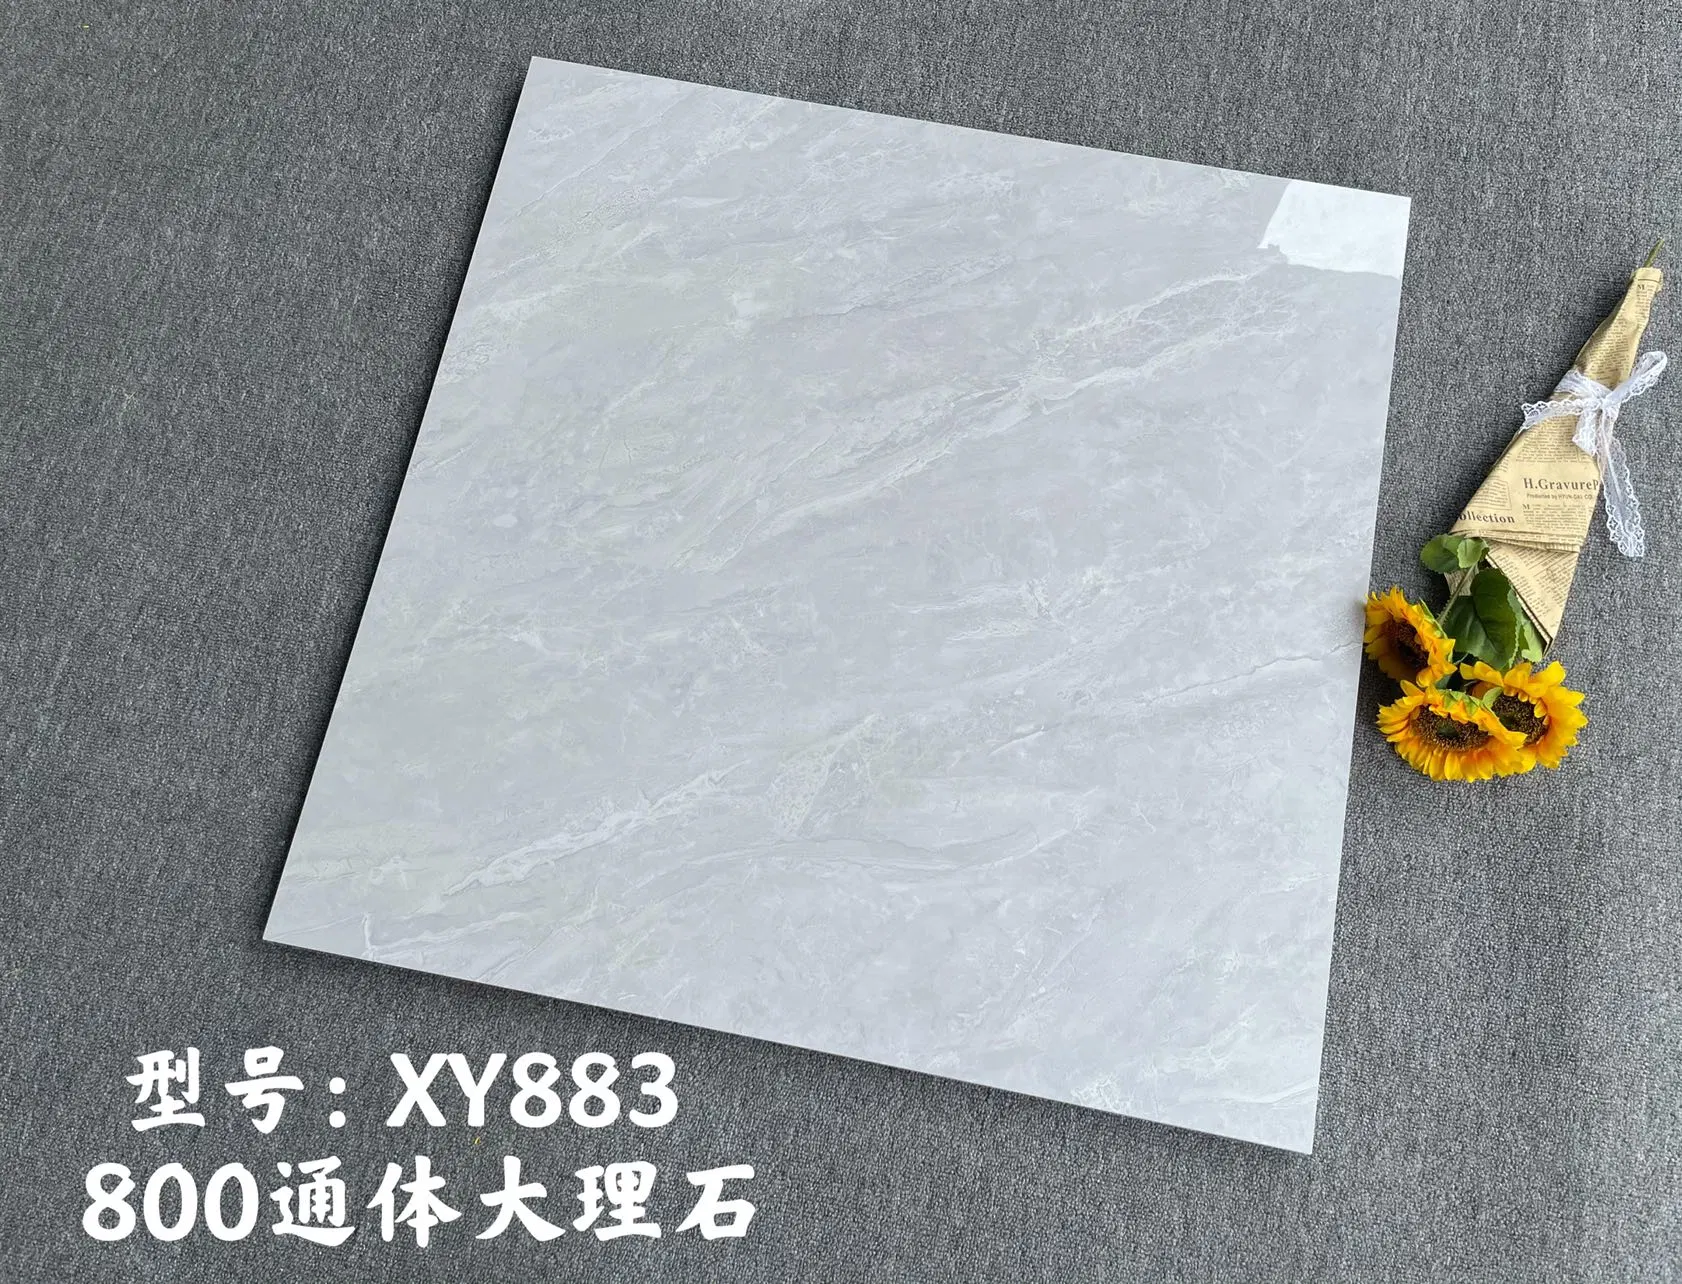 Carrelage de sol en marbre céramique de Guangdong en Chine pour salon moderne, carrelage de sol gris 800*800 pour chambre, carrelage en marbre de brique antidérapant.